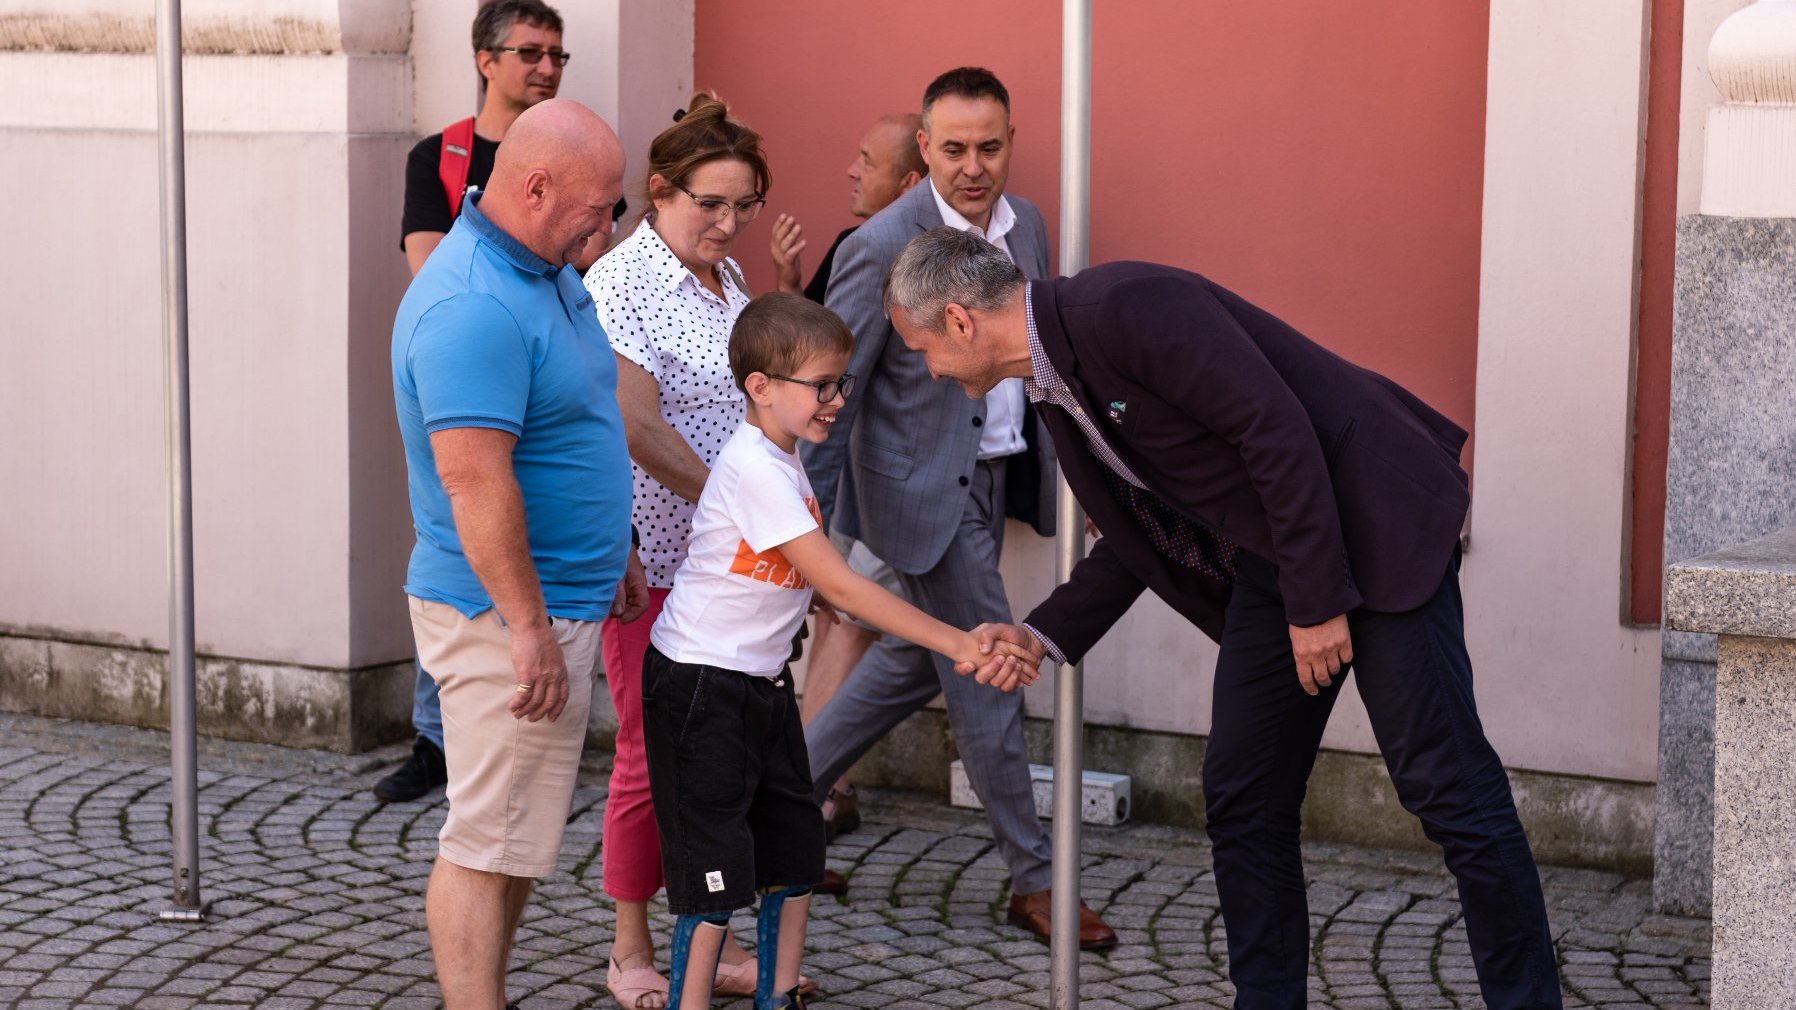 Na zdjęciu zastępca prezydenta Poznania podaje rękę chłopcu, za którym stoją dorośli